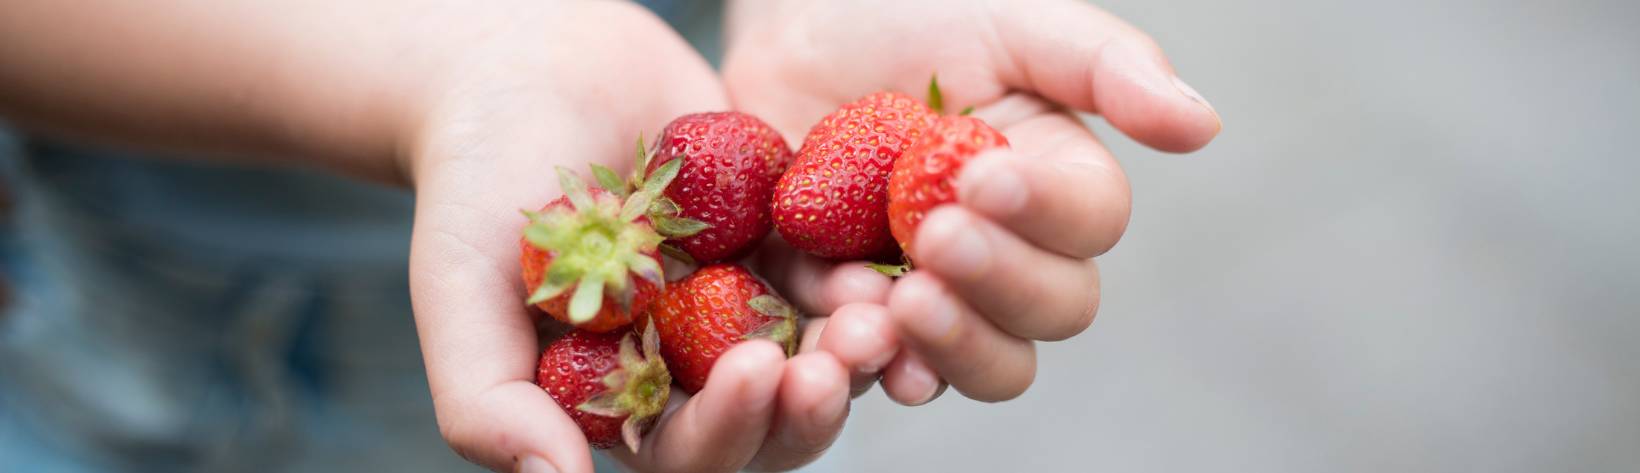 Ein Kind hält Erdbeeren in der Hand - Förderfonds Ernährung